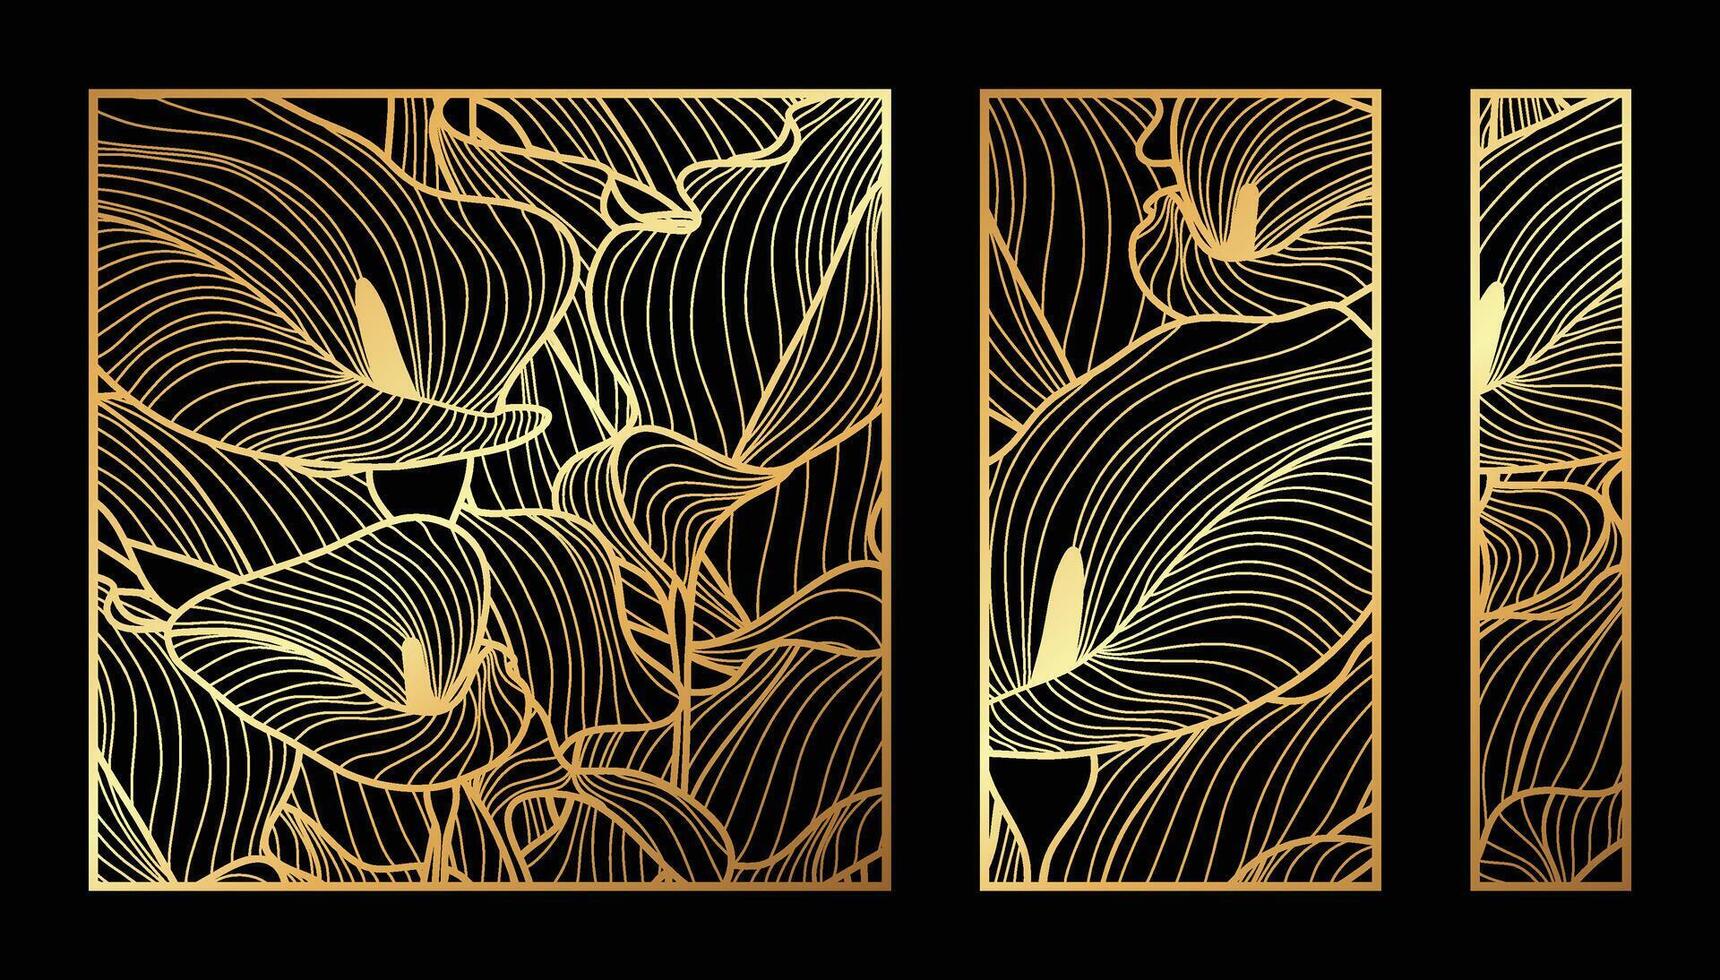 goud anthurium bloem patroon verzameling. laser besnoeiing met lijn ontwerp patroon. ontwerp voor hout snijwerk, muur paneel decor, metaal snijden, muur kunst, Hoes achtergrond, behang en spandoek. vector